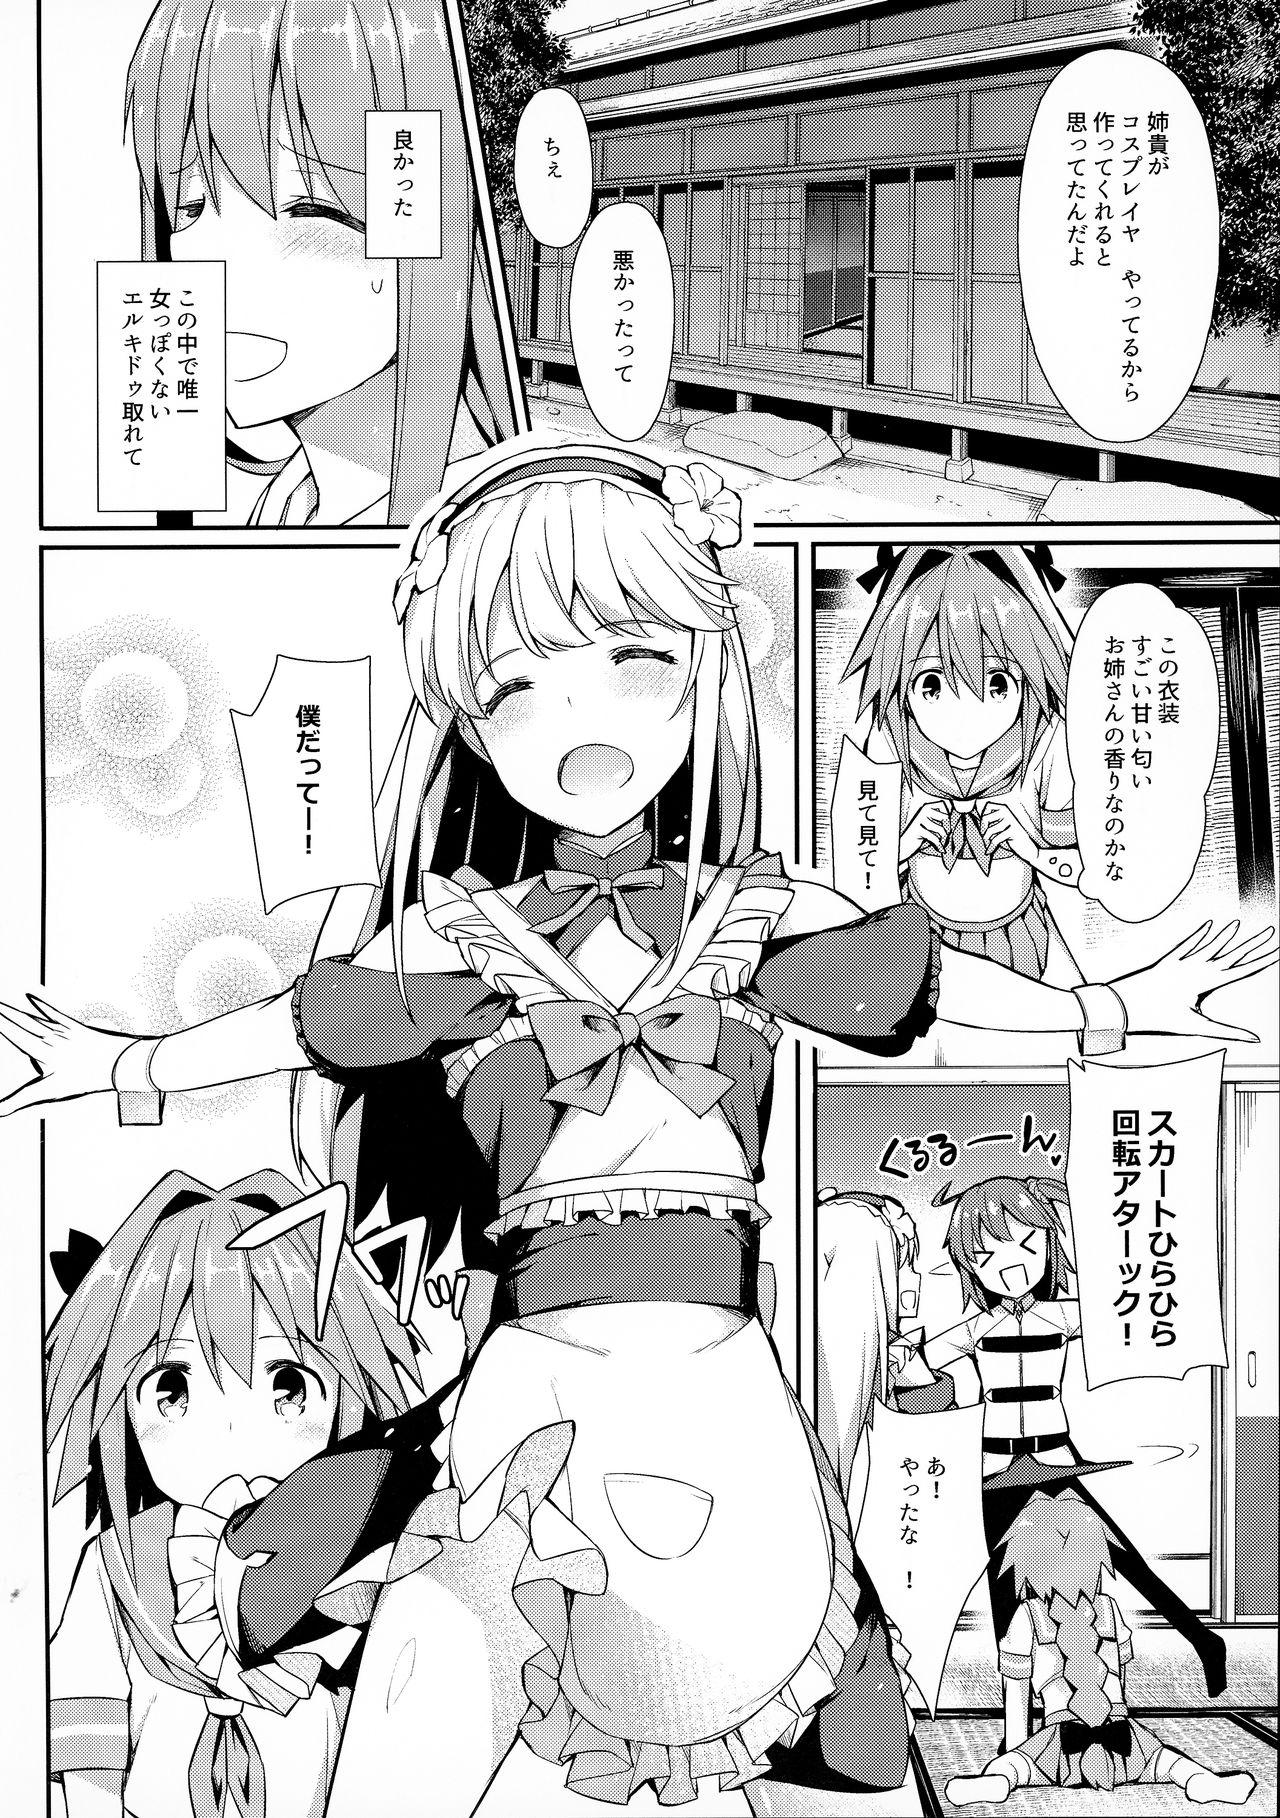 T Girl TakuCos Tokuiten Rankou Bokki Sekai Agartha - Fate grand order Soloboy - Page 3